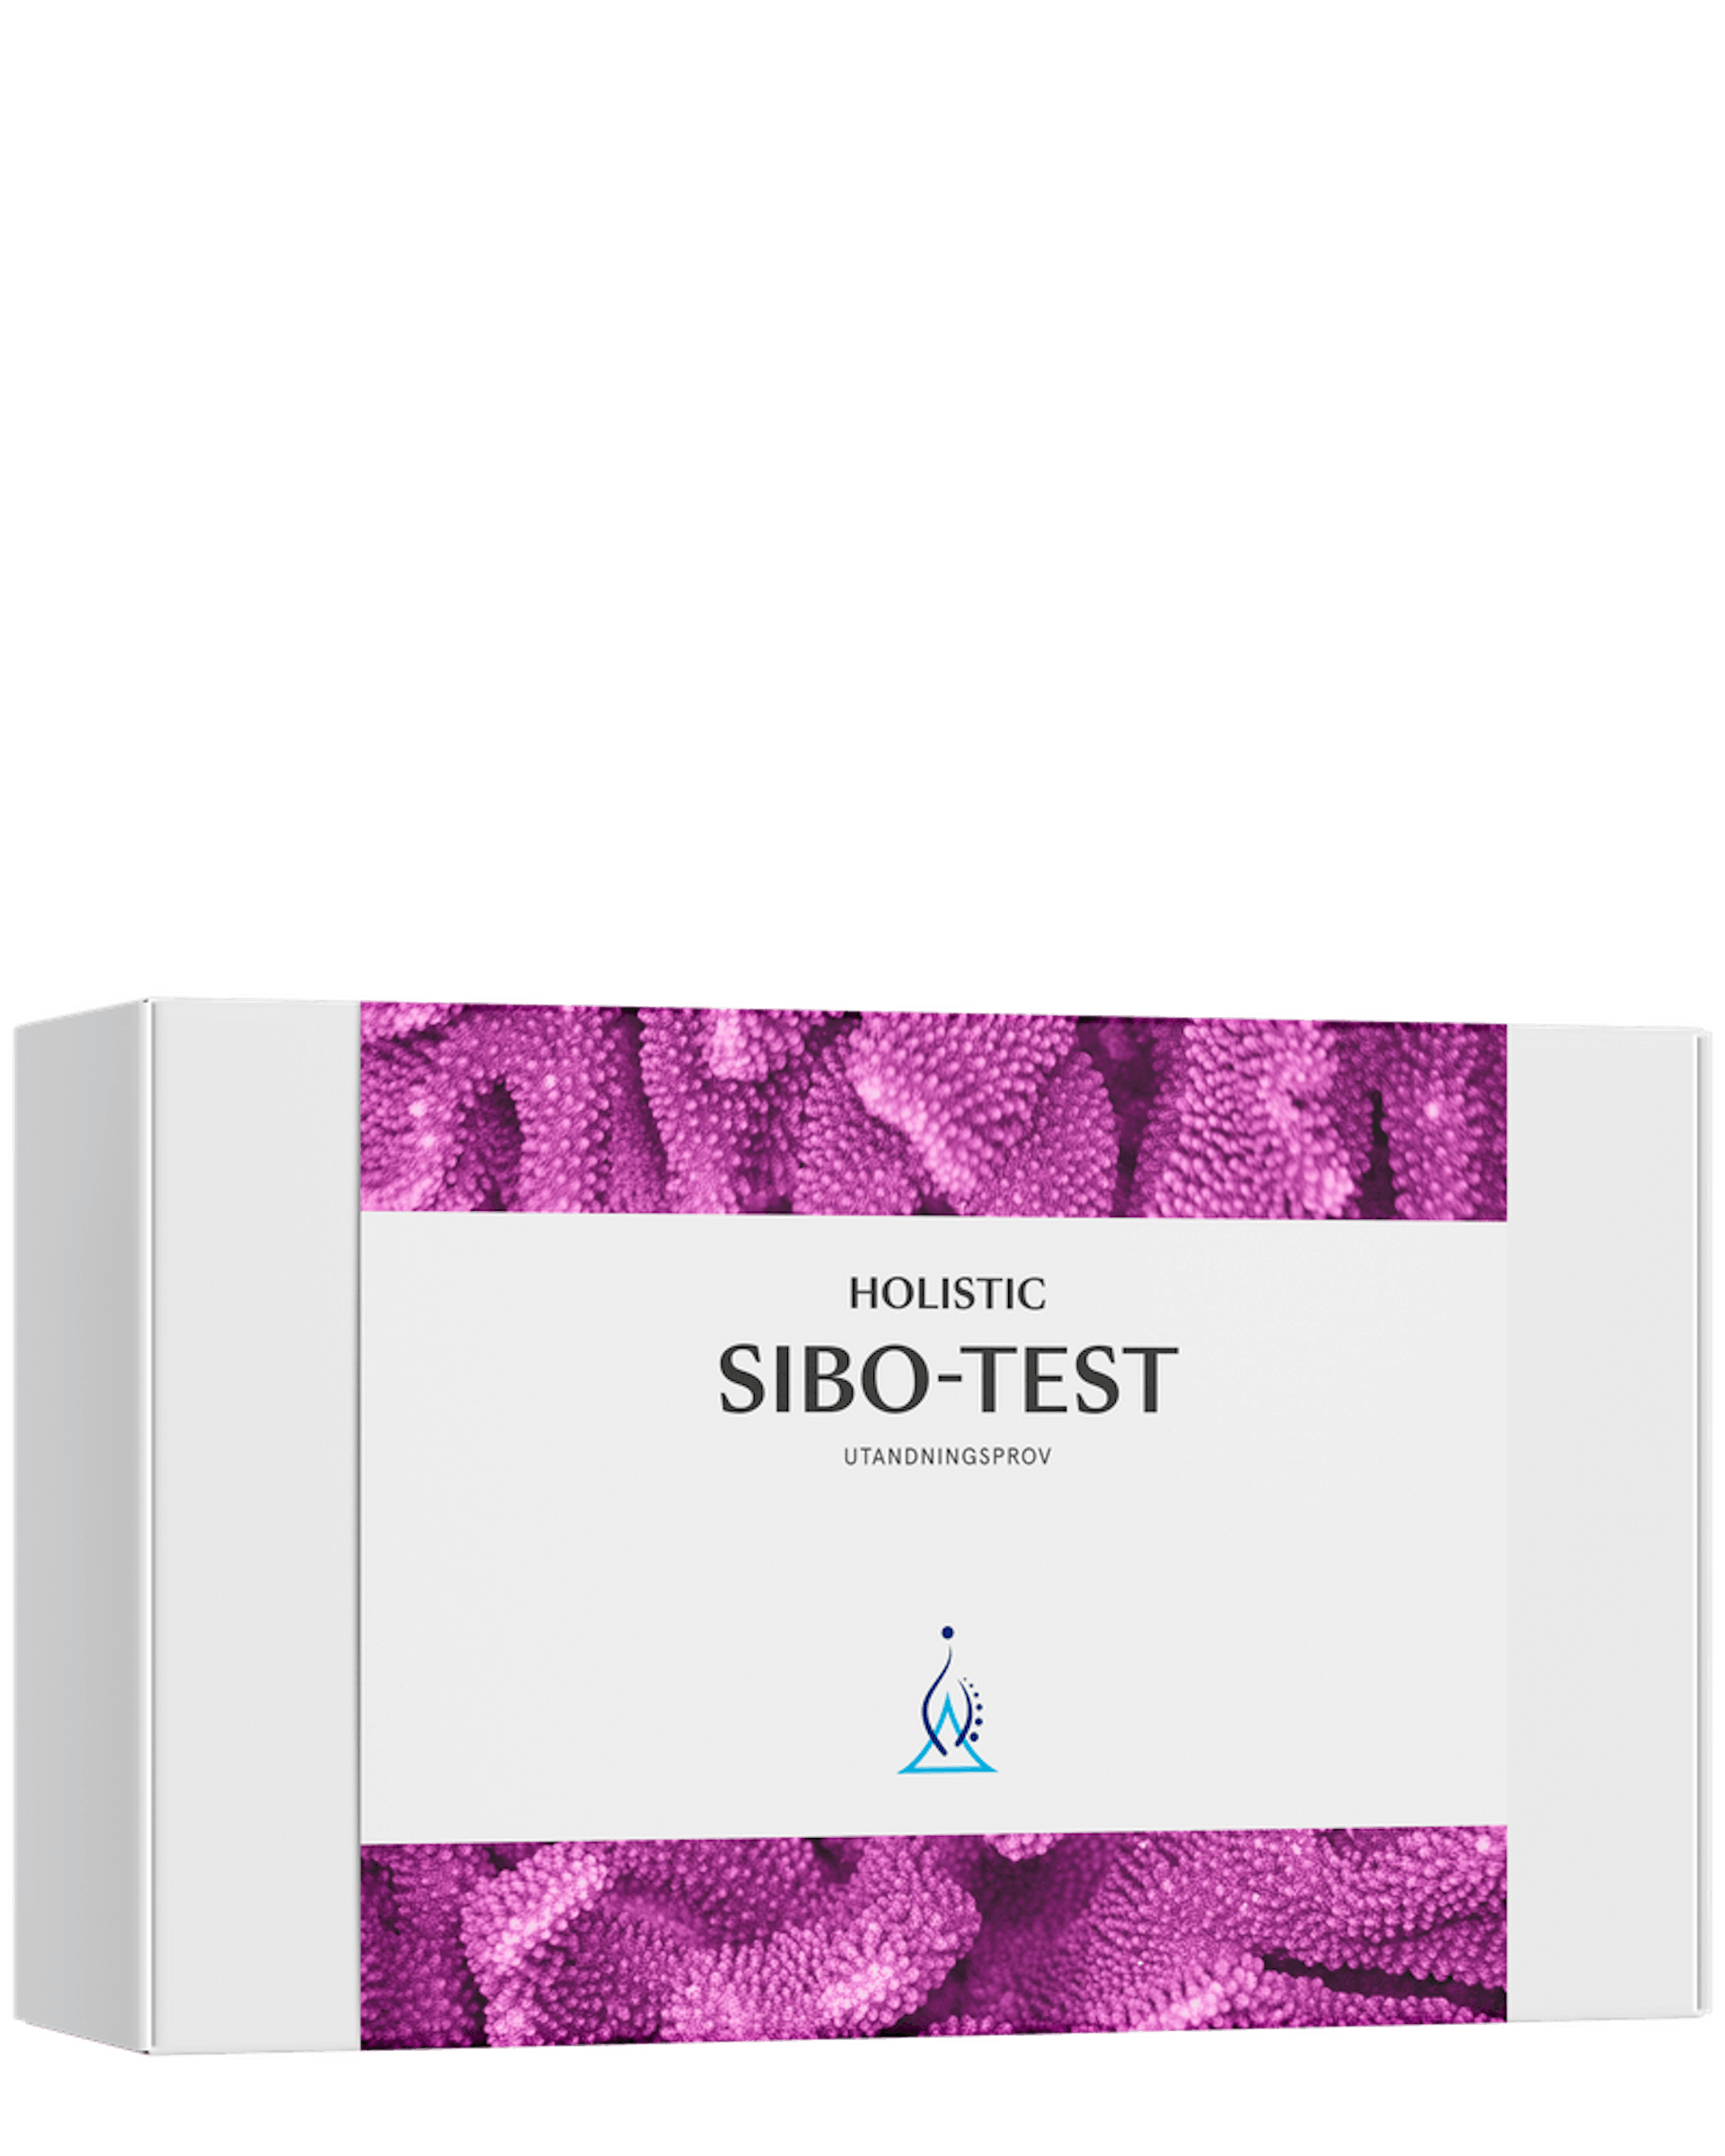 Holistic SIBO-test